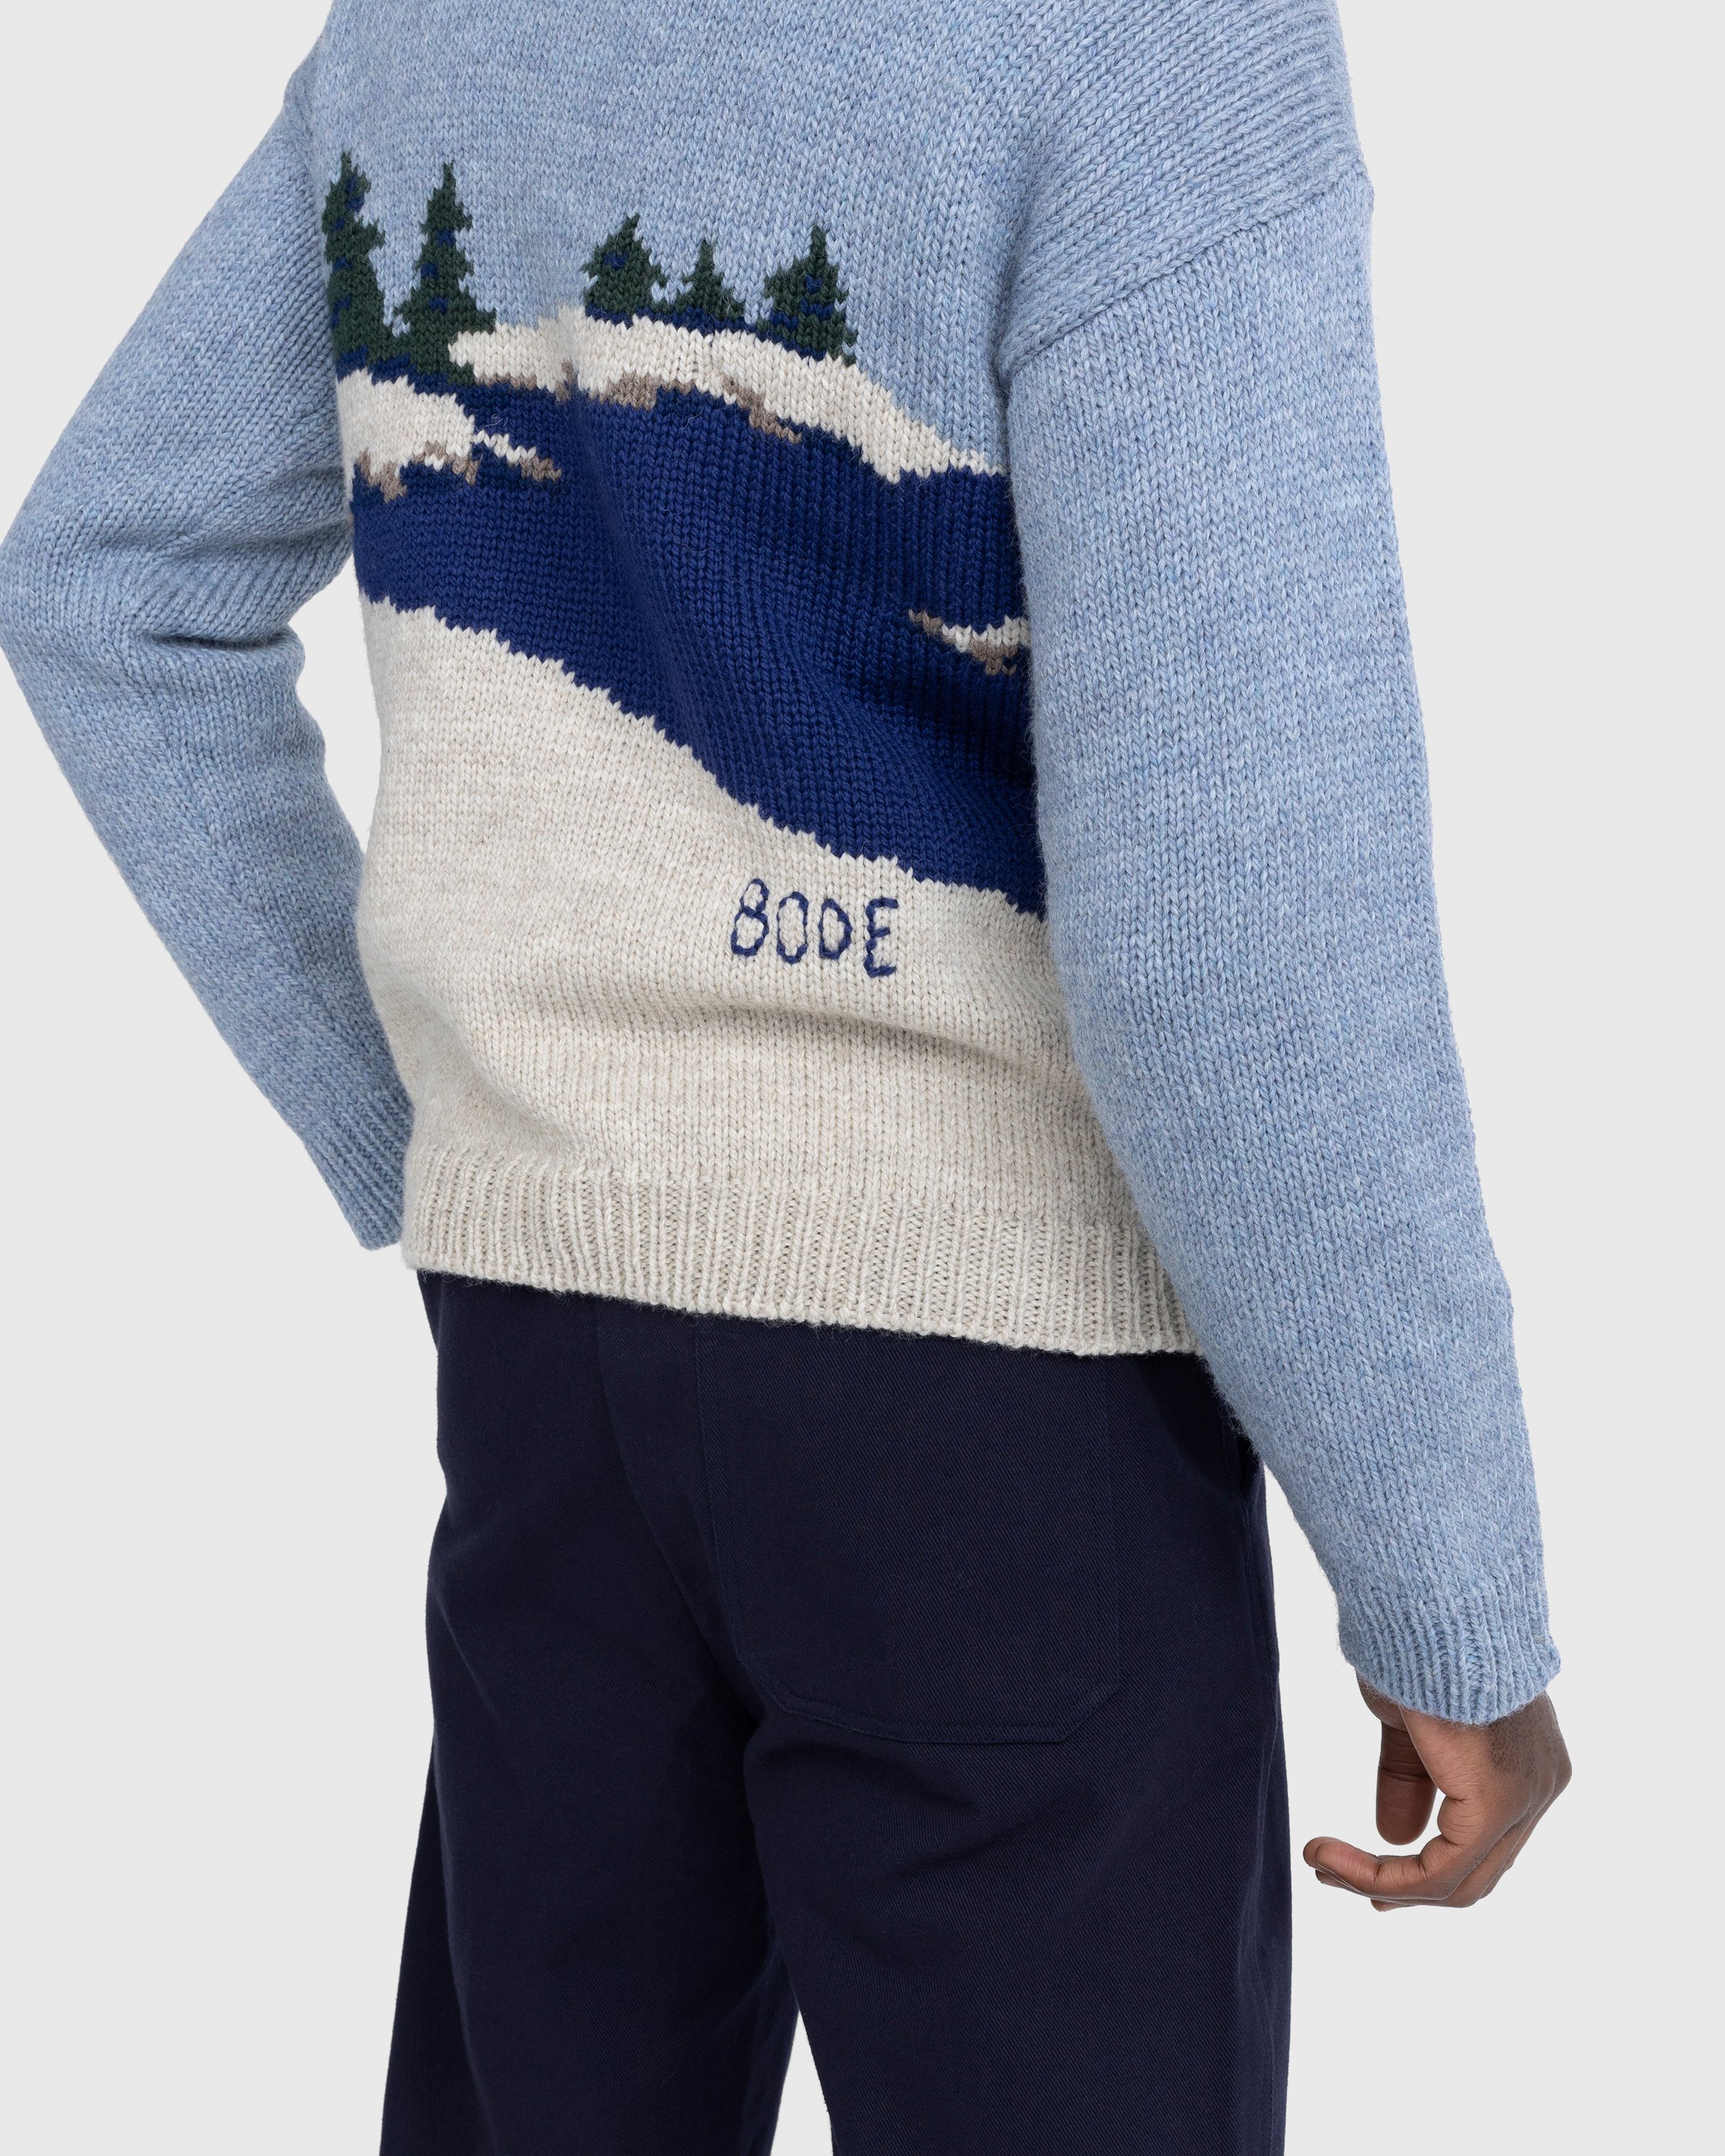 Bode - Highland Lighthouse Sweater Multi - Clothing - Multi - Image 6